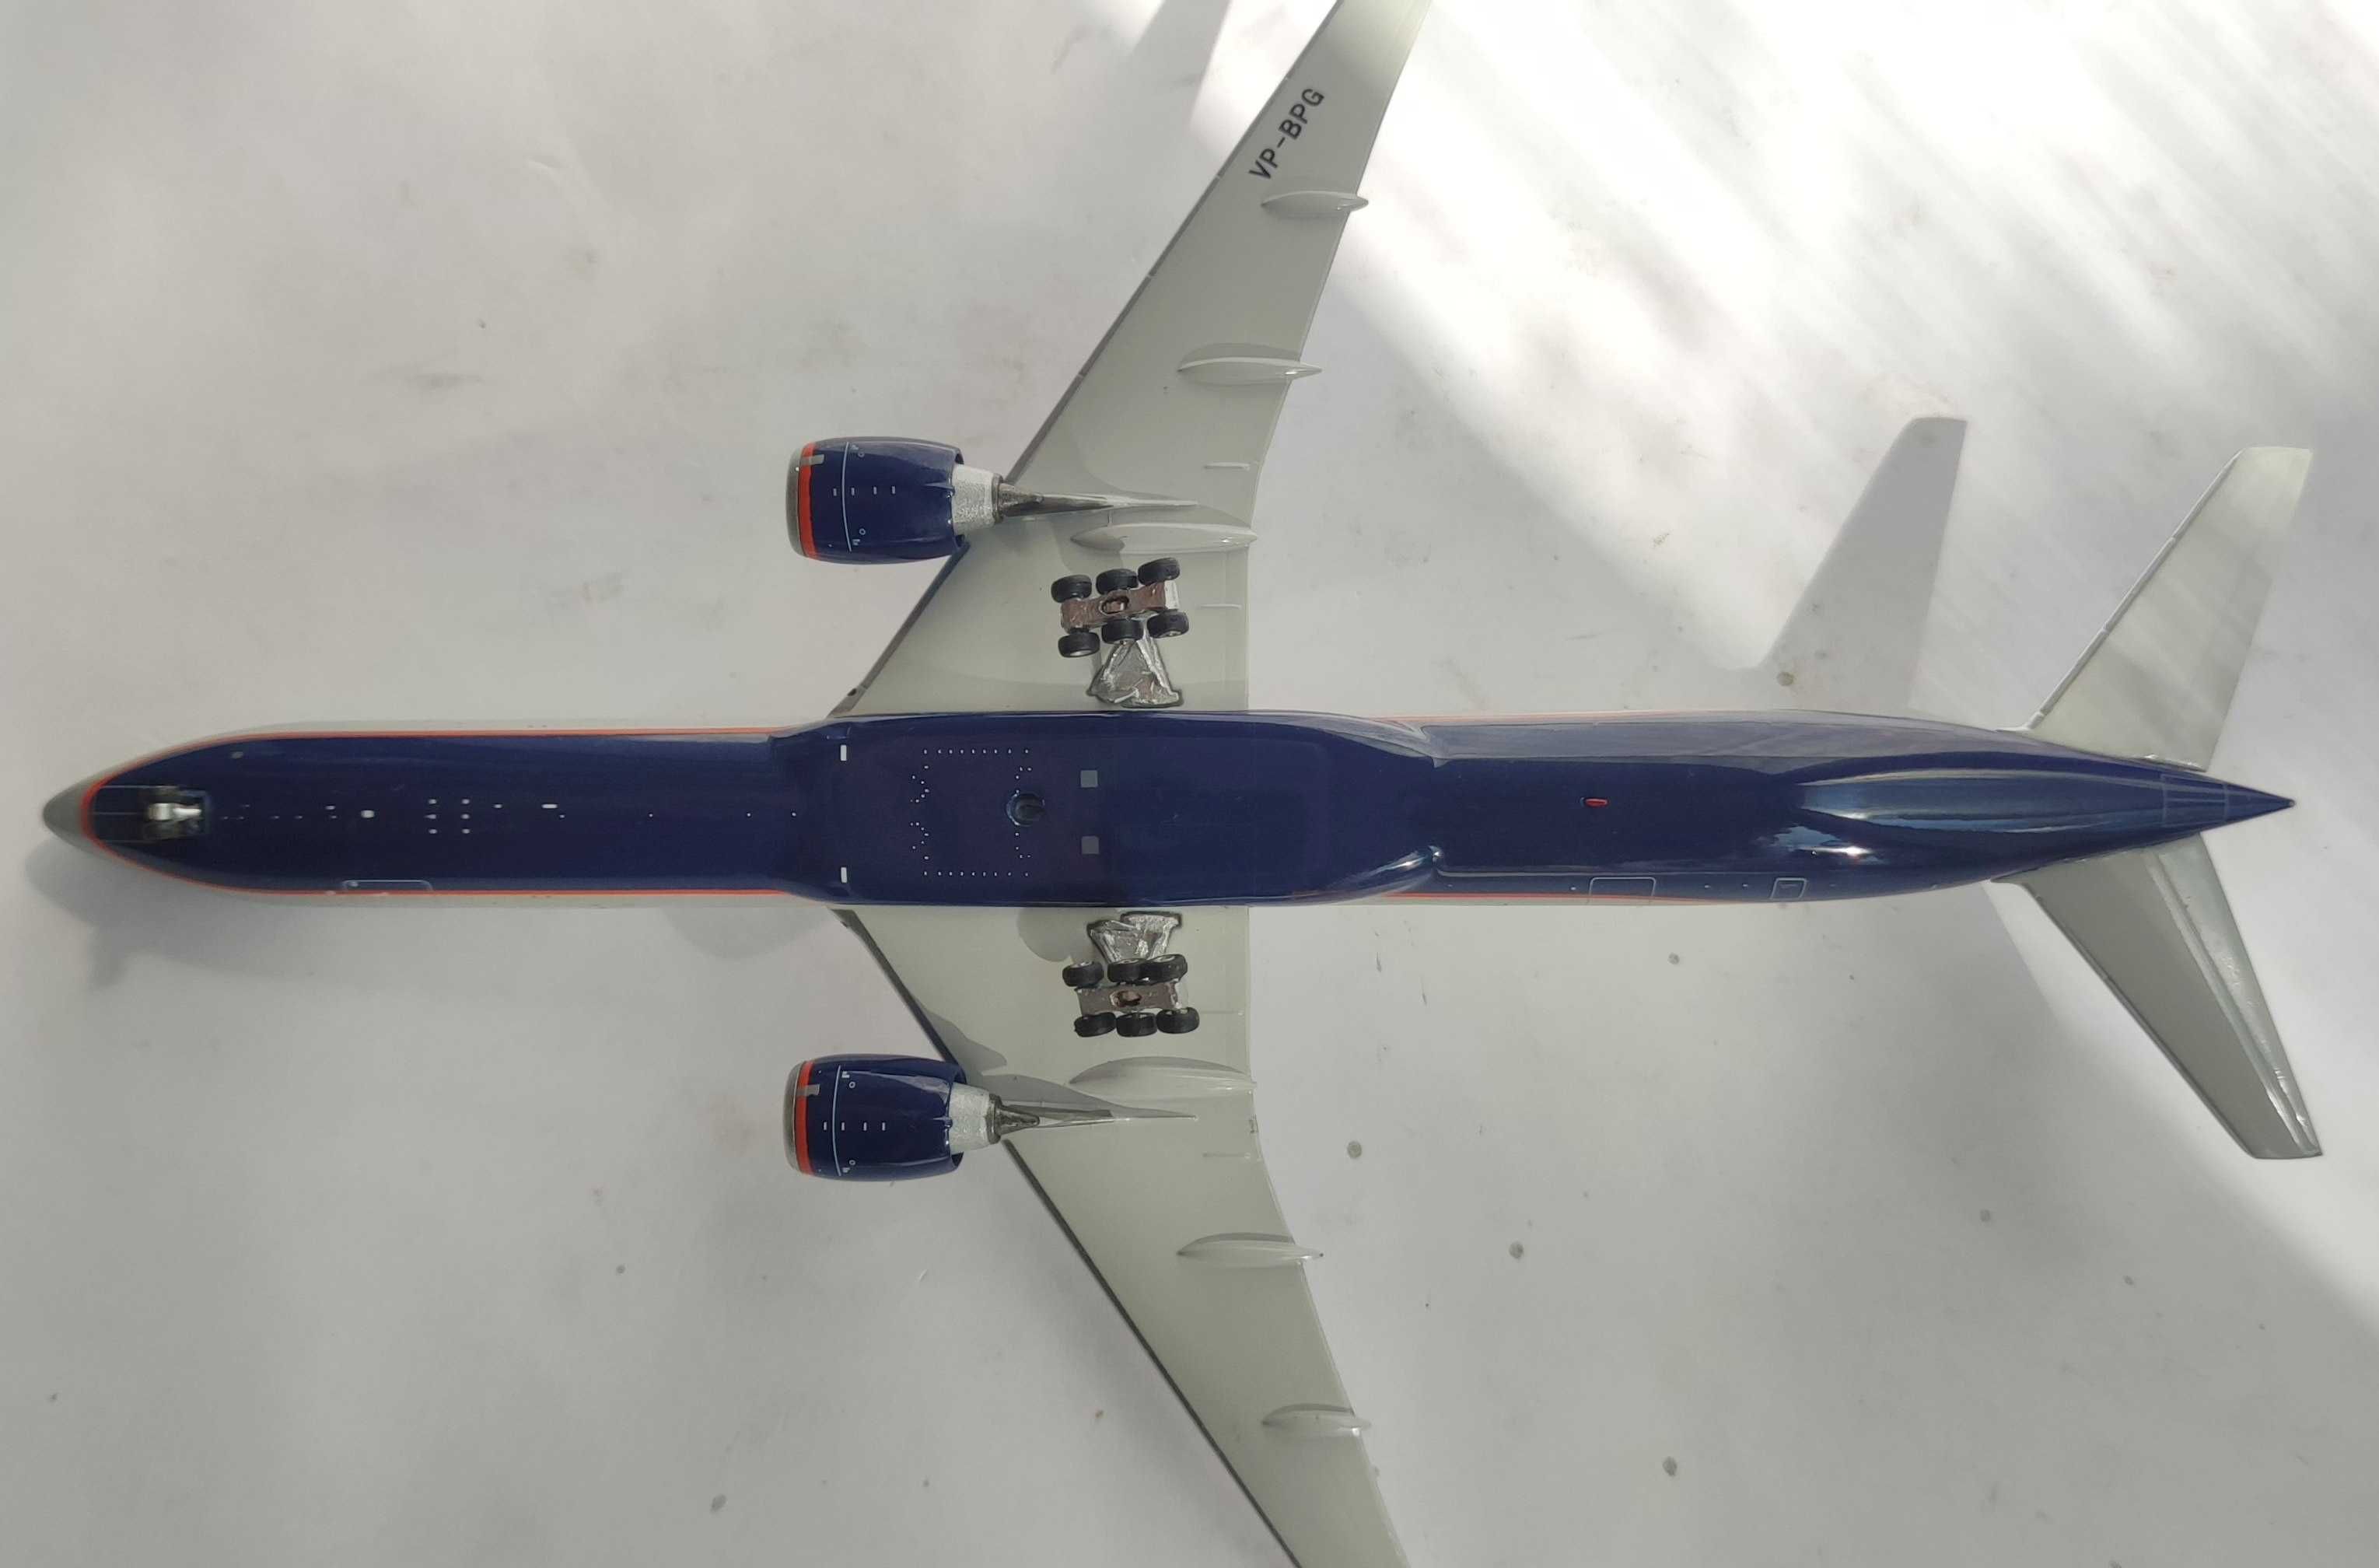 1/400 модель самолета Boeing 777 Аэрофлот